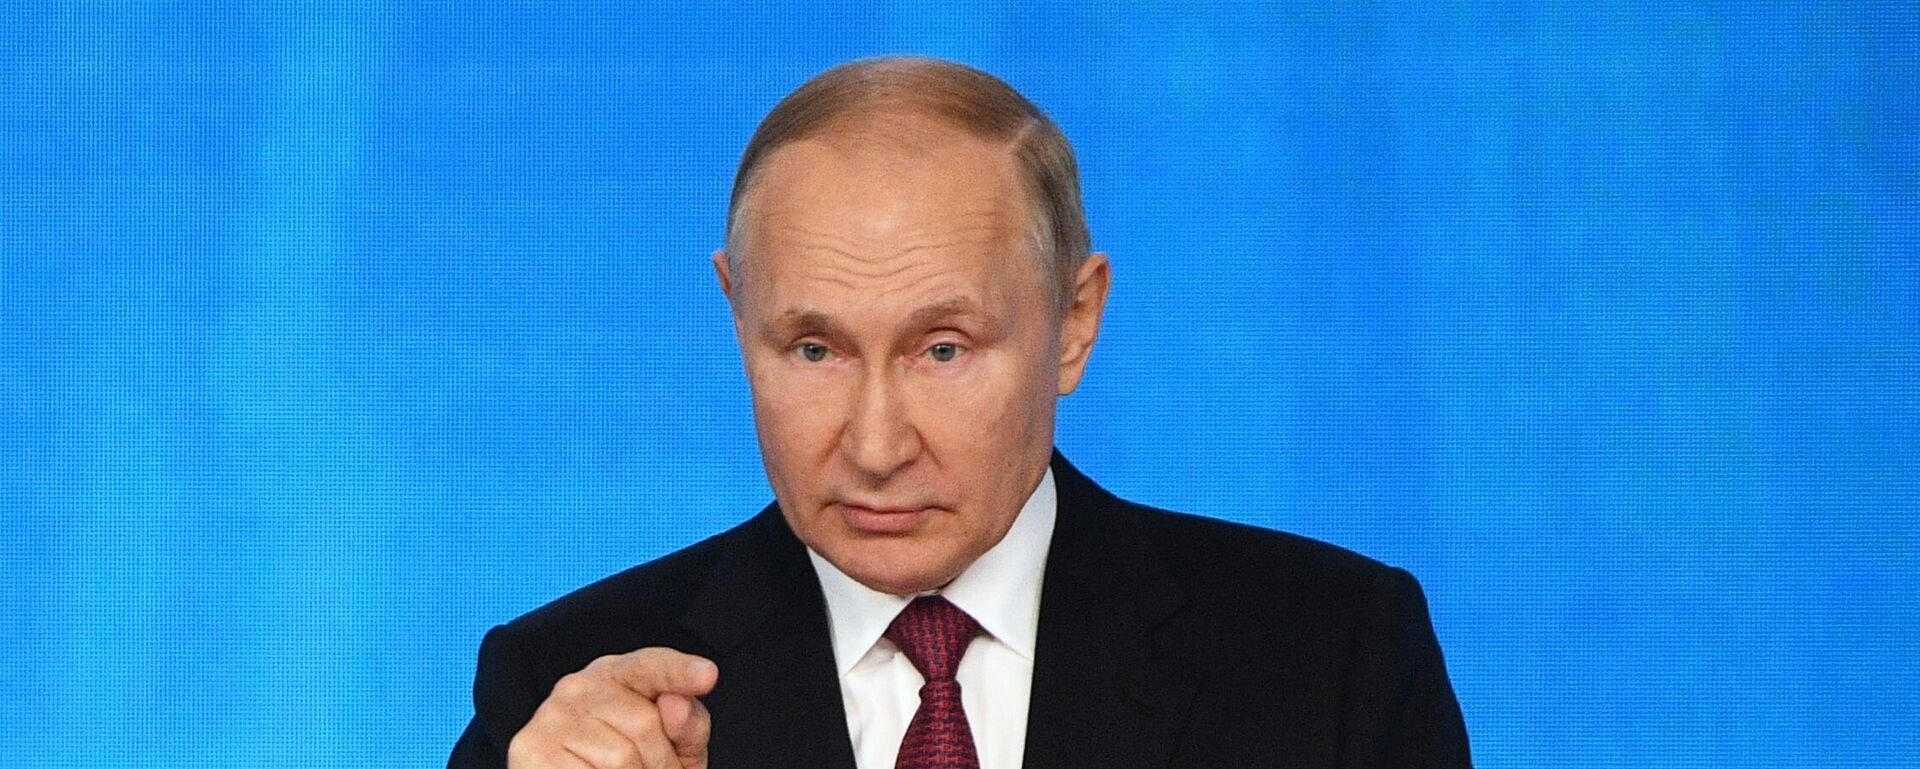 Rusiya Prezidenti Vladimir Putin - Sputnik Azərbaycan, 1920, 27.10.2022